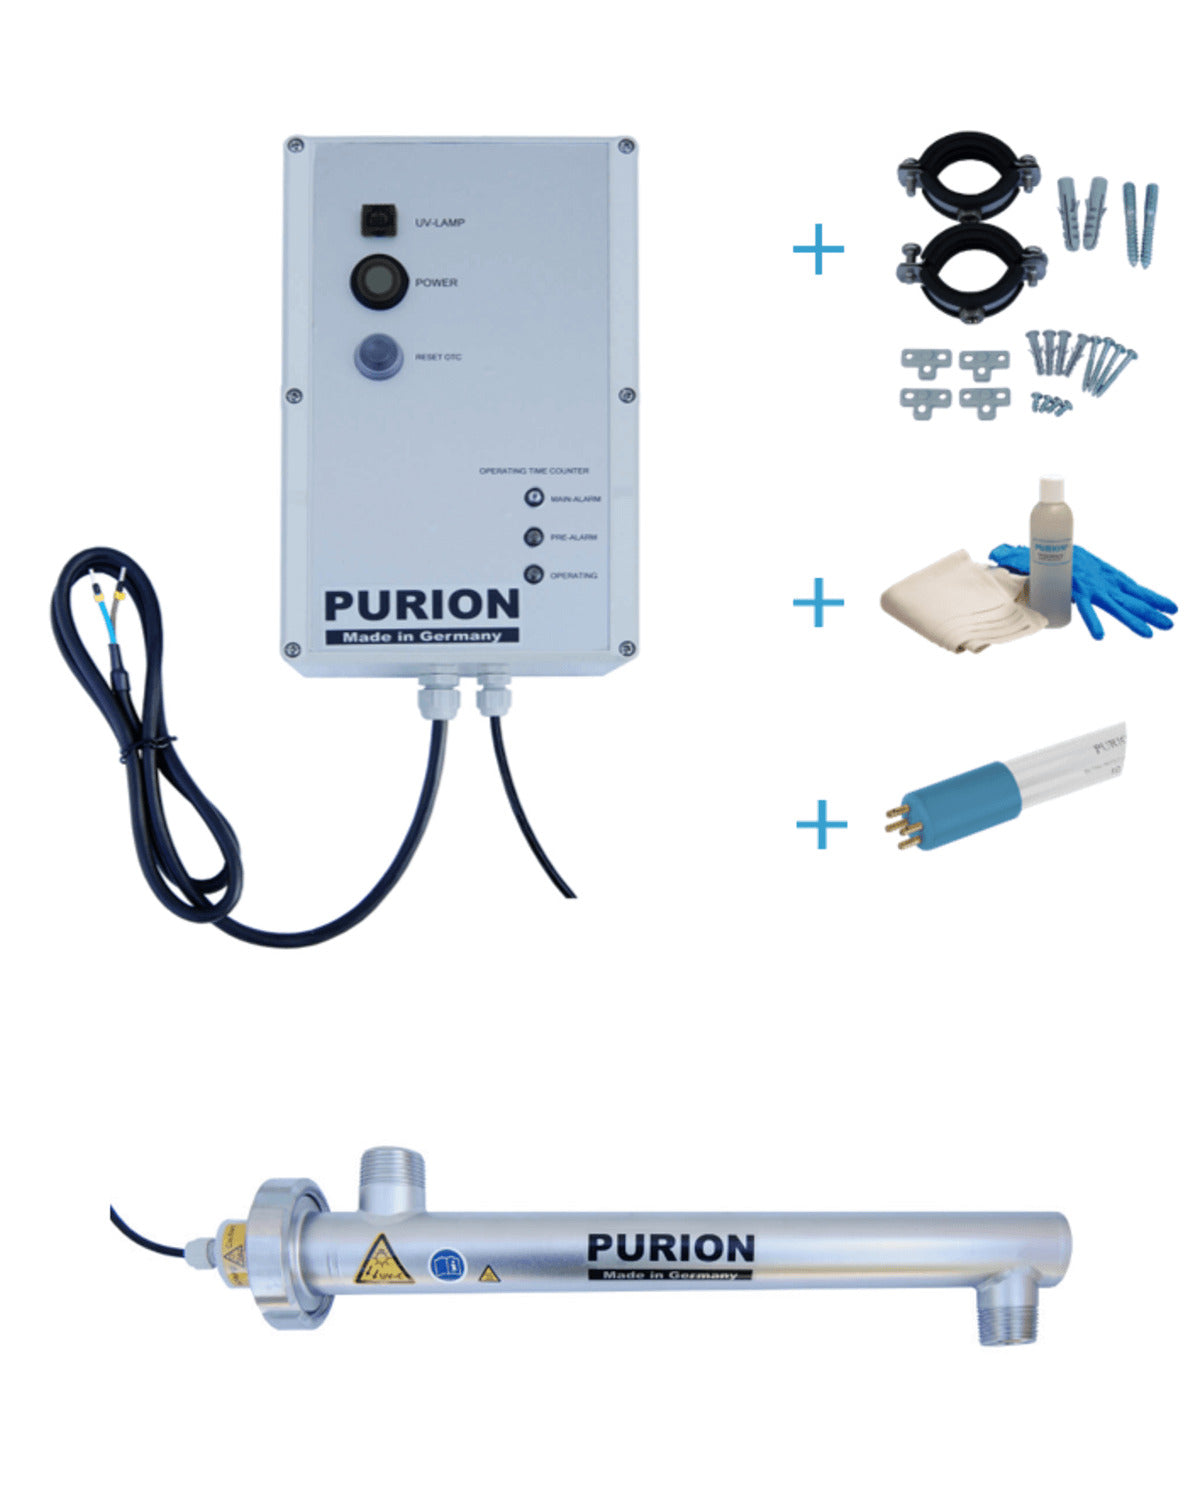 Das PURION 1000 OTC Bundle der PURION GmbH ist ein System zur Selbstversorgung mit sauberem Trinkwasser. Es nutzt fortschrittliche Wasserdesinfektionstechniken, um sicheres und gereinigtes Wasser bereitzustellen.